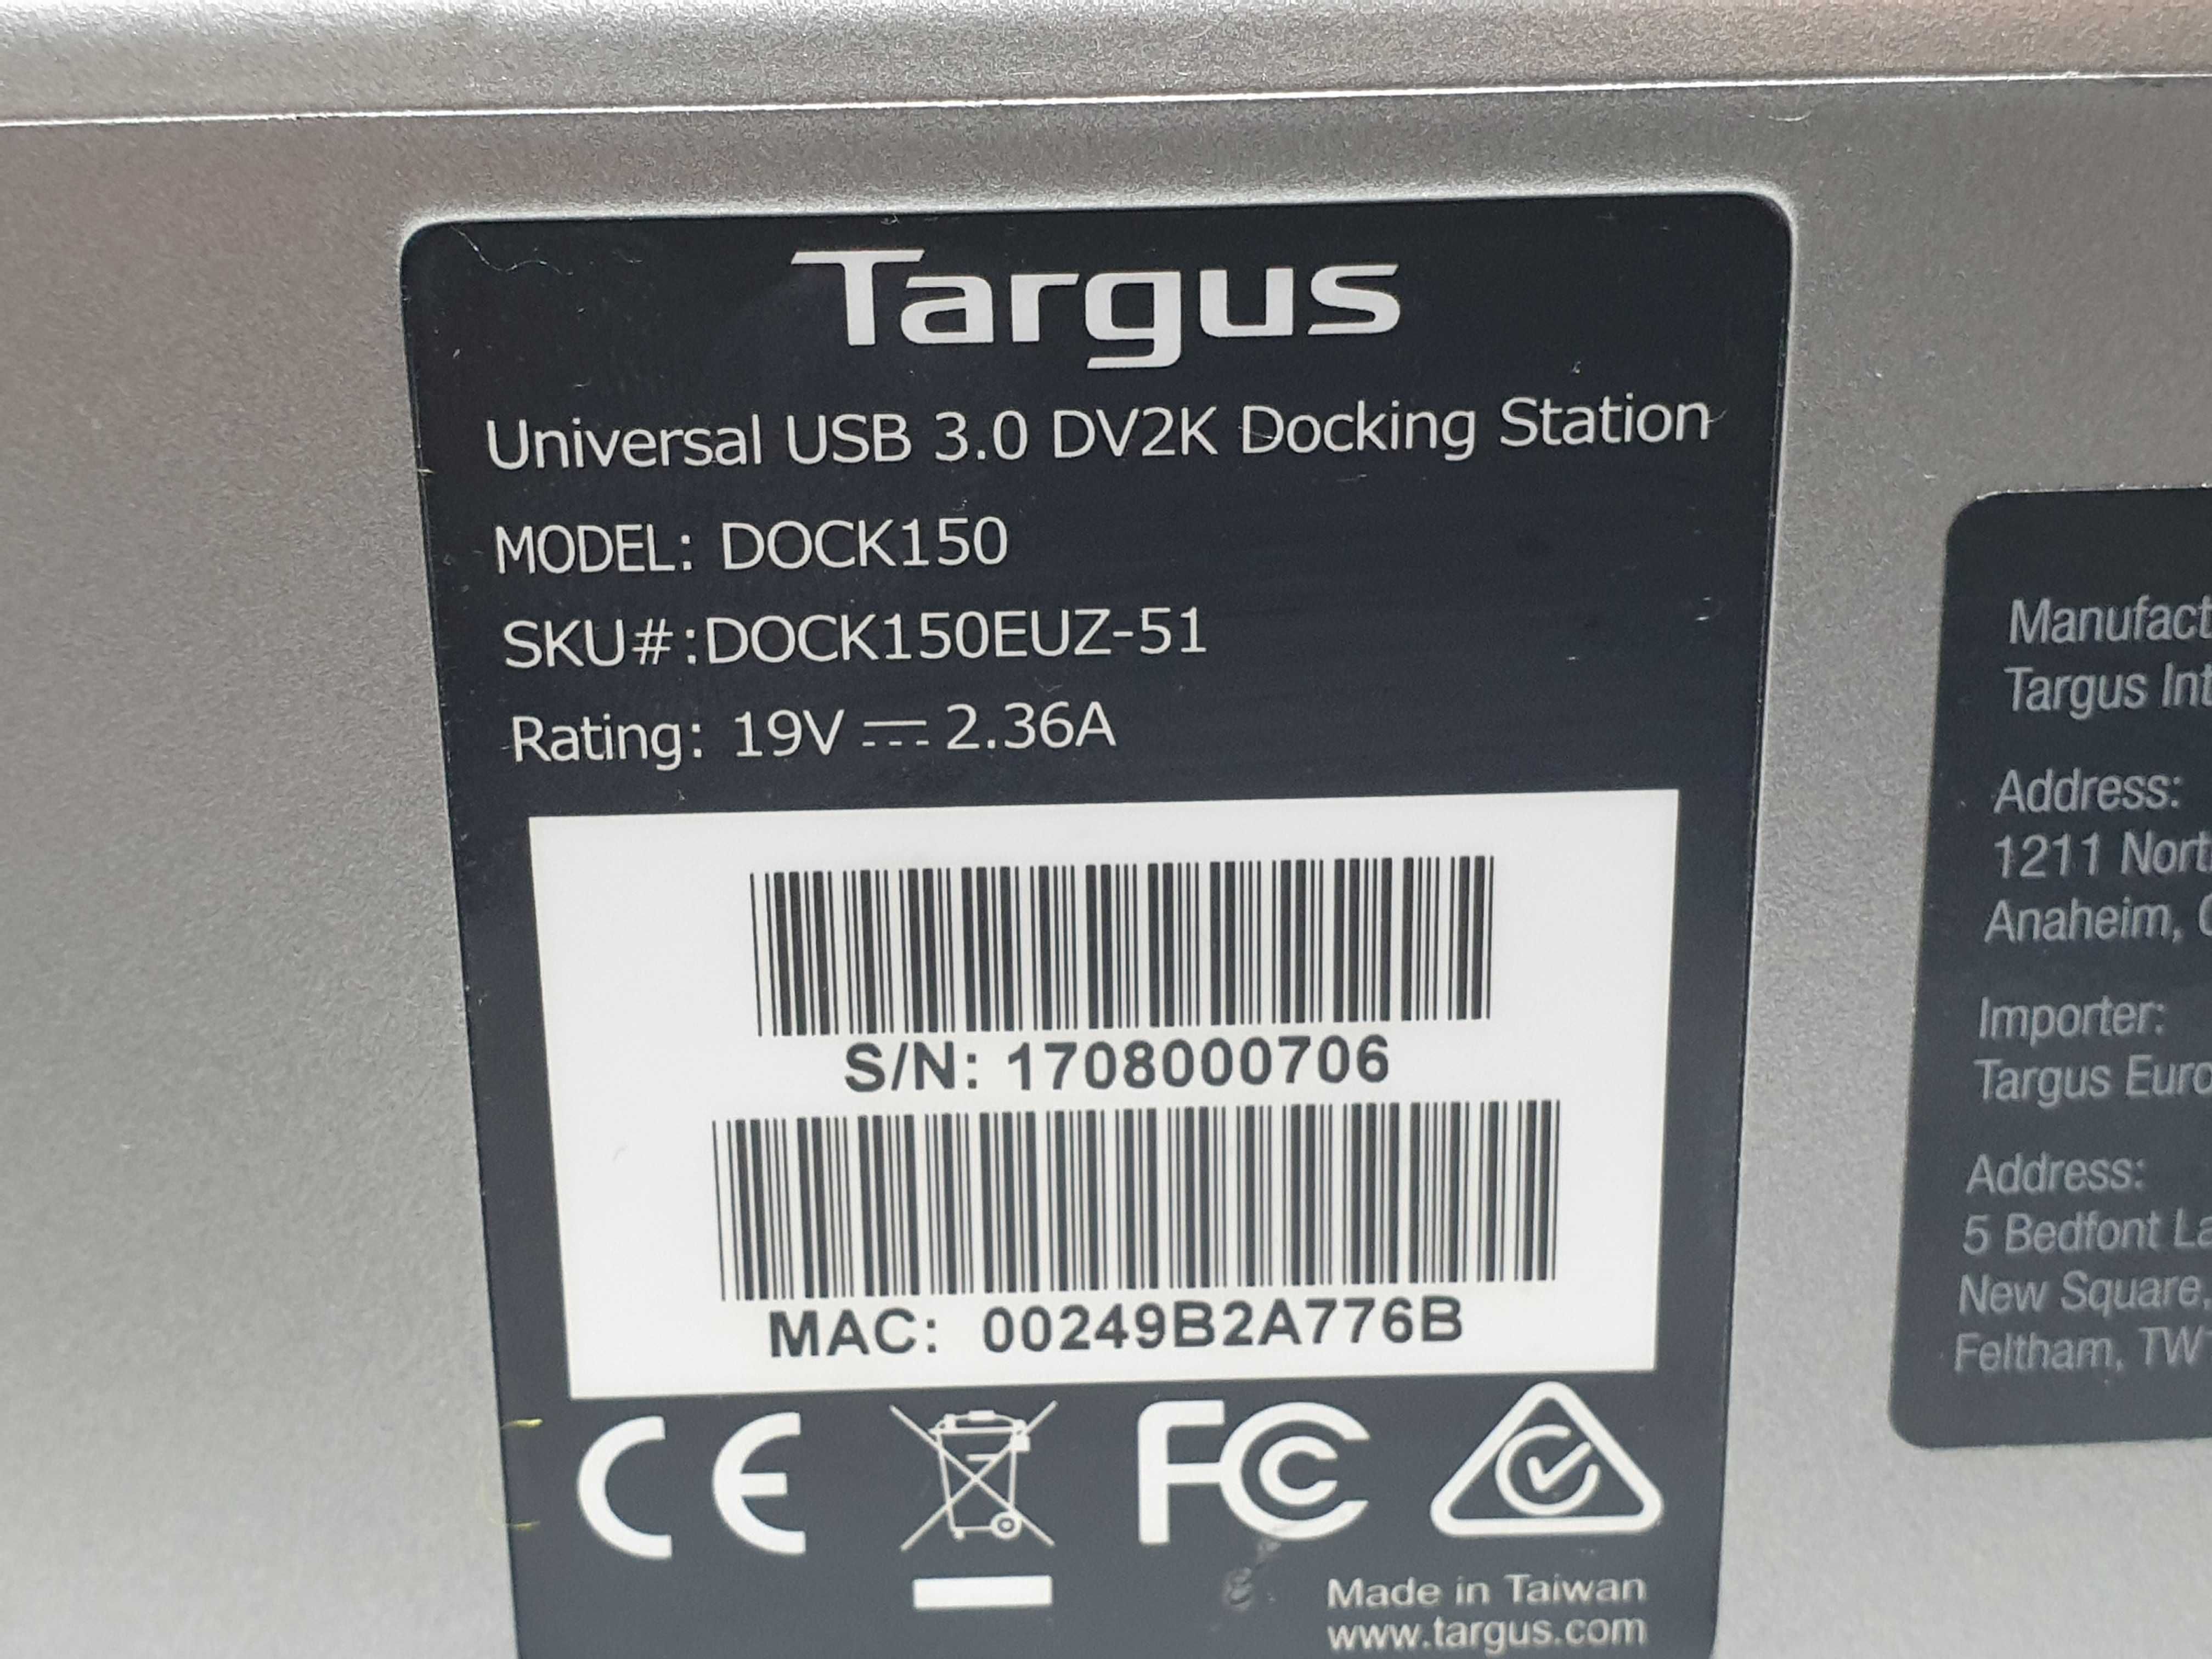 док станція Targus Dock150 Universal USB 3.0 DV2K